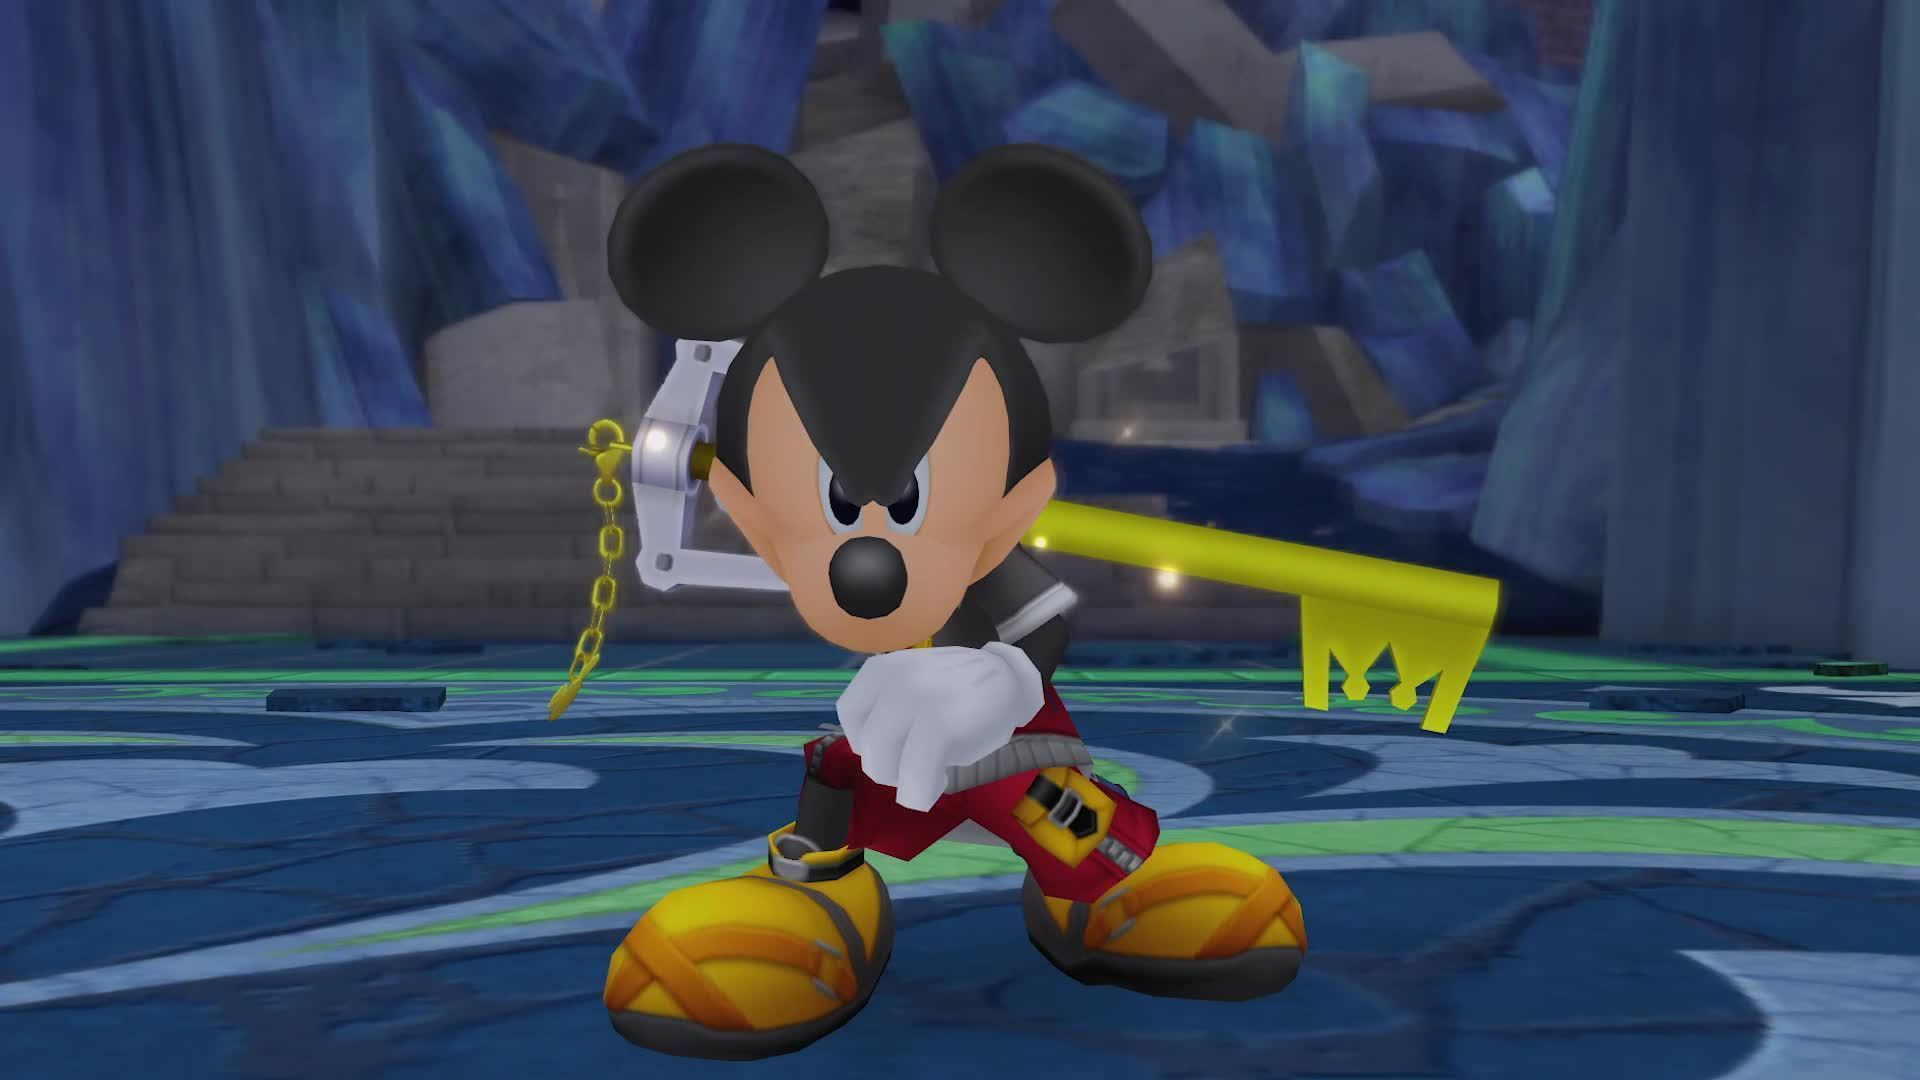 All King Mickey Cutscenes: Kingdom Hearts 3 60fps 1080p ᴴᴰ 